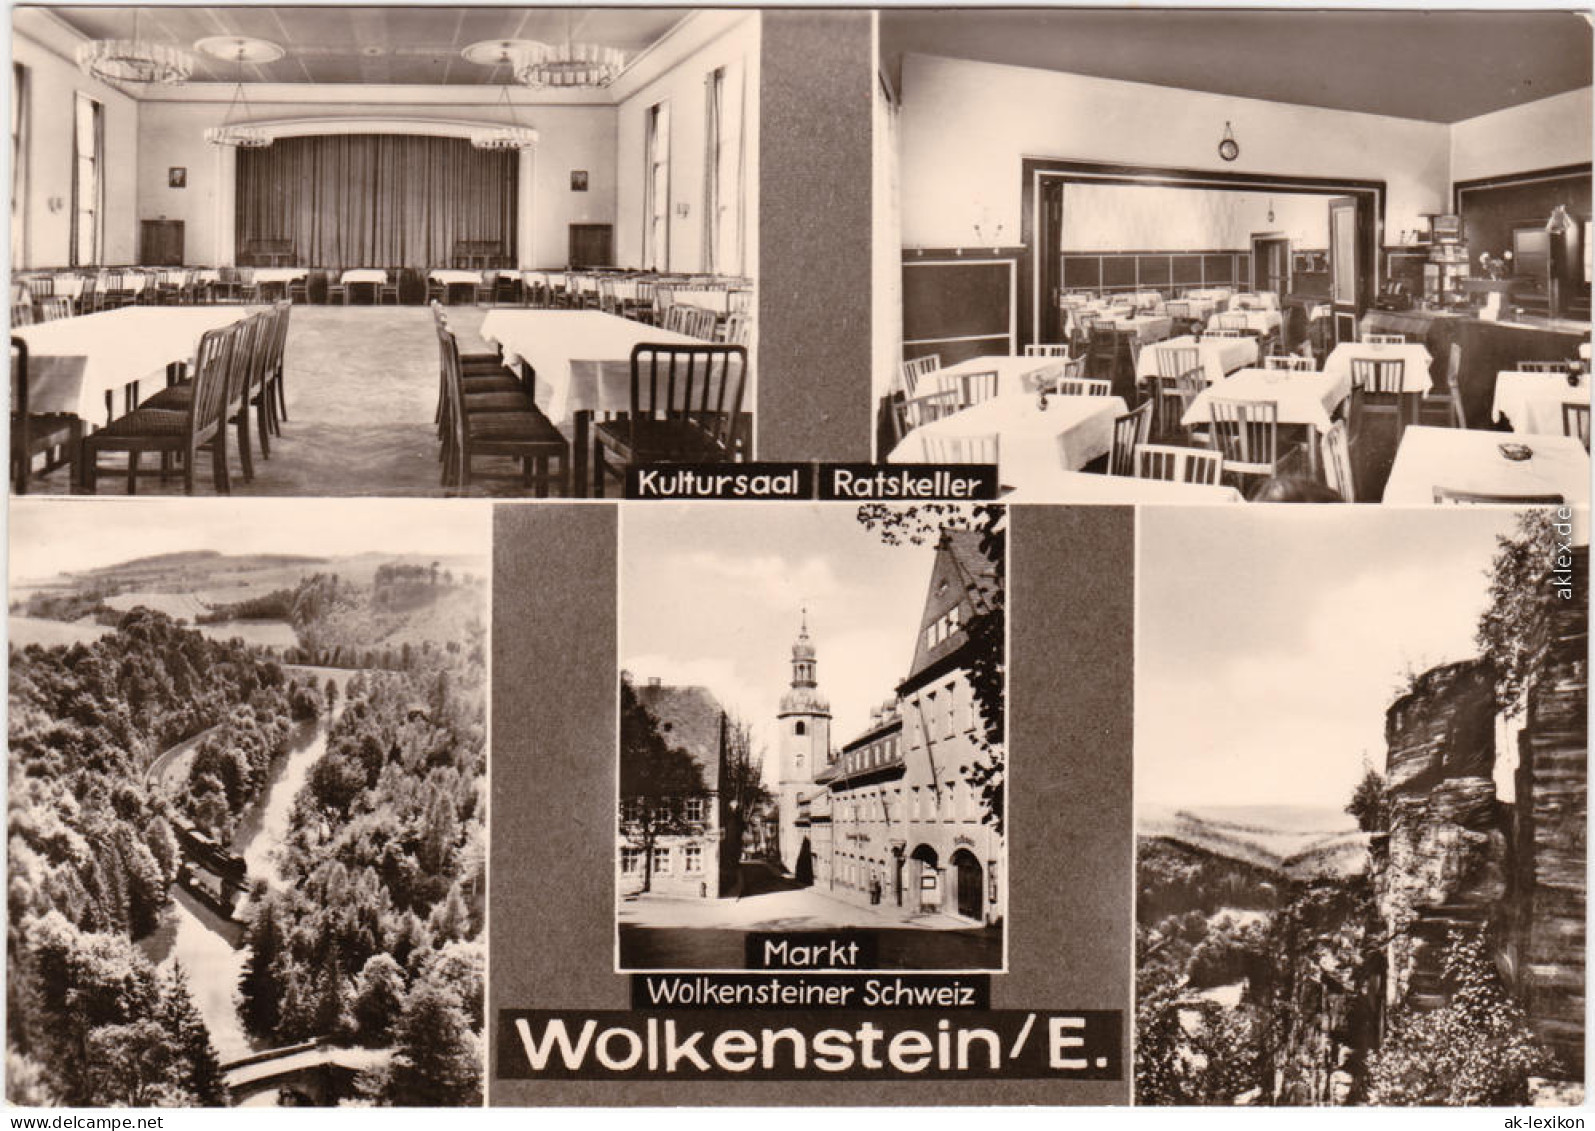 Wolkenstein Wolkensteiner Schweiz, Kultursaal, Ratskeller, Markt 1975  - Wolkenstein